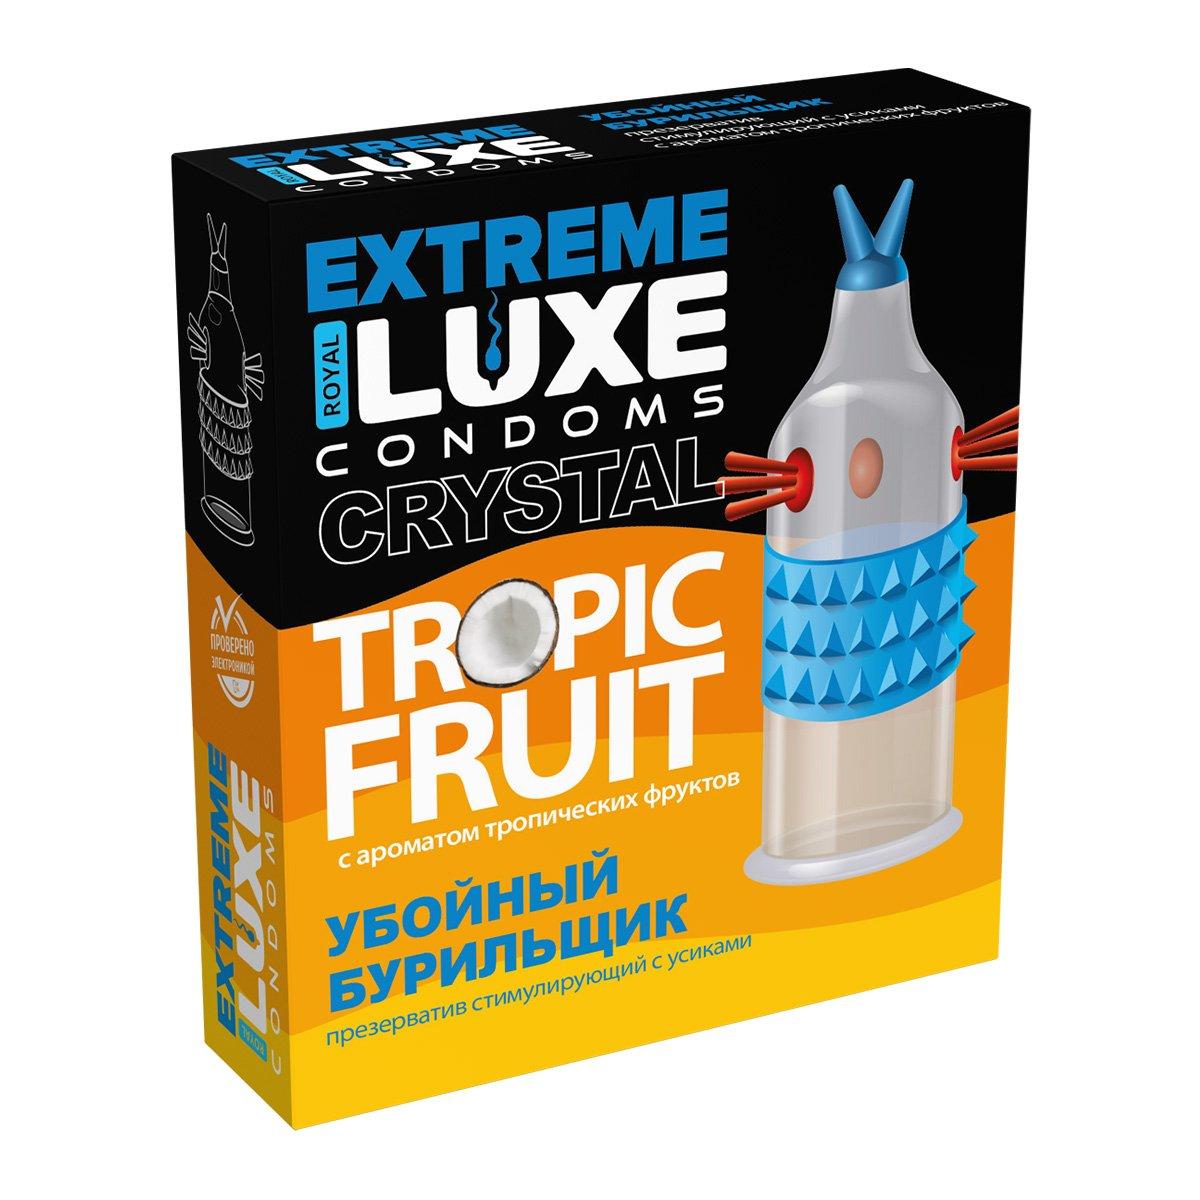 Презерватив Luxe Extreme "Убойный бурильщик" (тропические фрукты), 1 штука